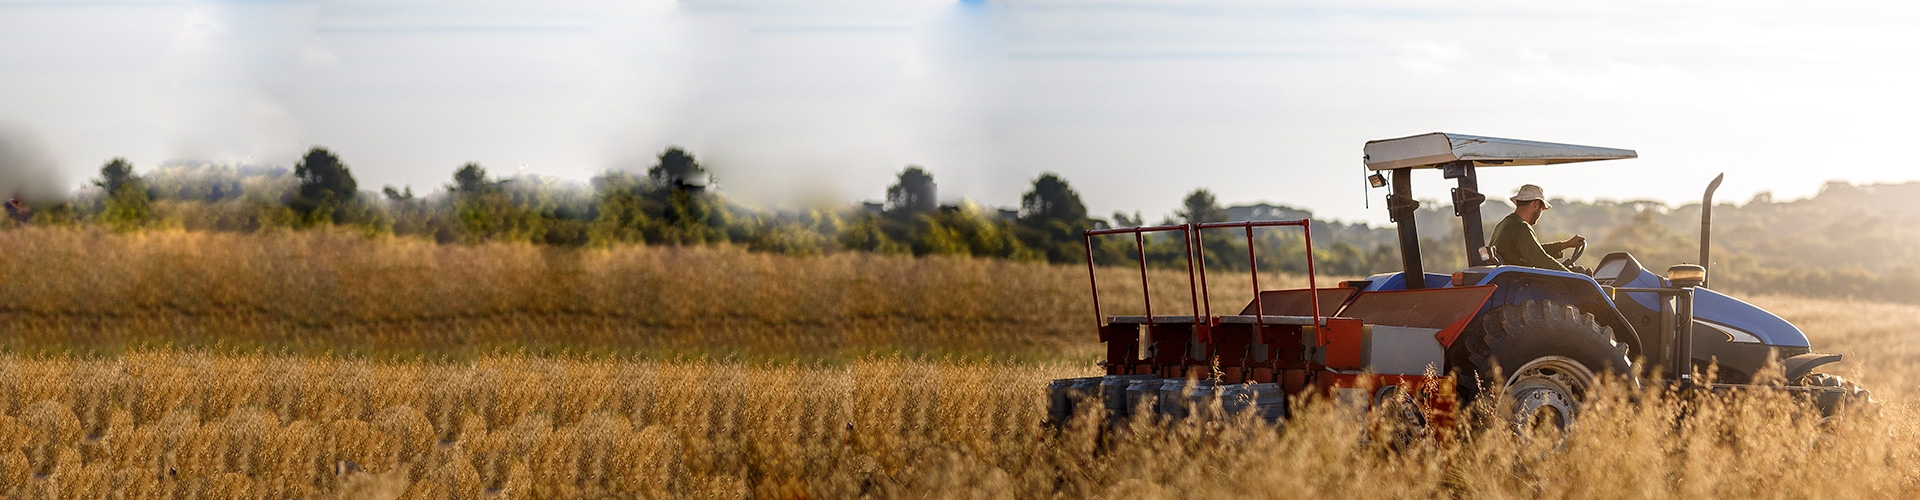 Asesoramiento financiero en Agricultura y Ganadería - Hombre con sombrero manejando un tractor en el campo